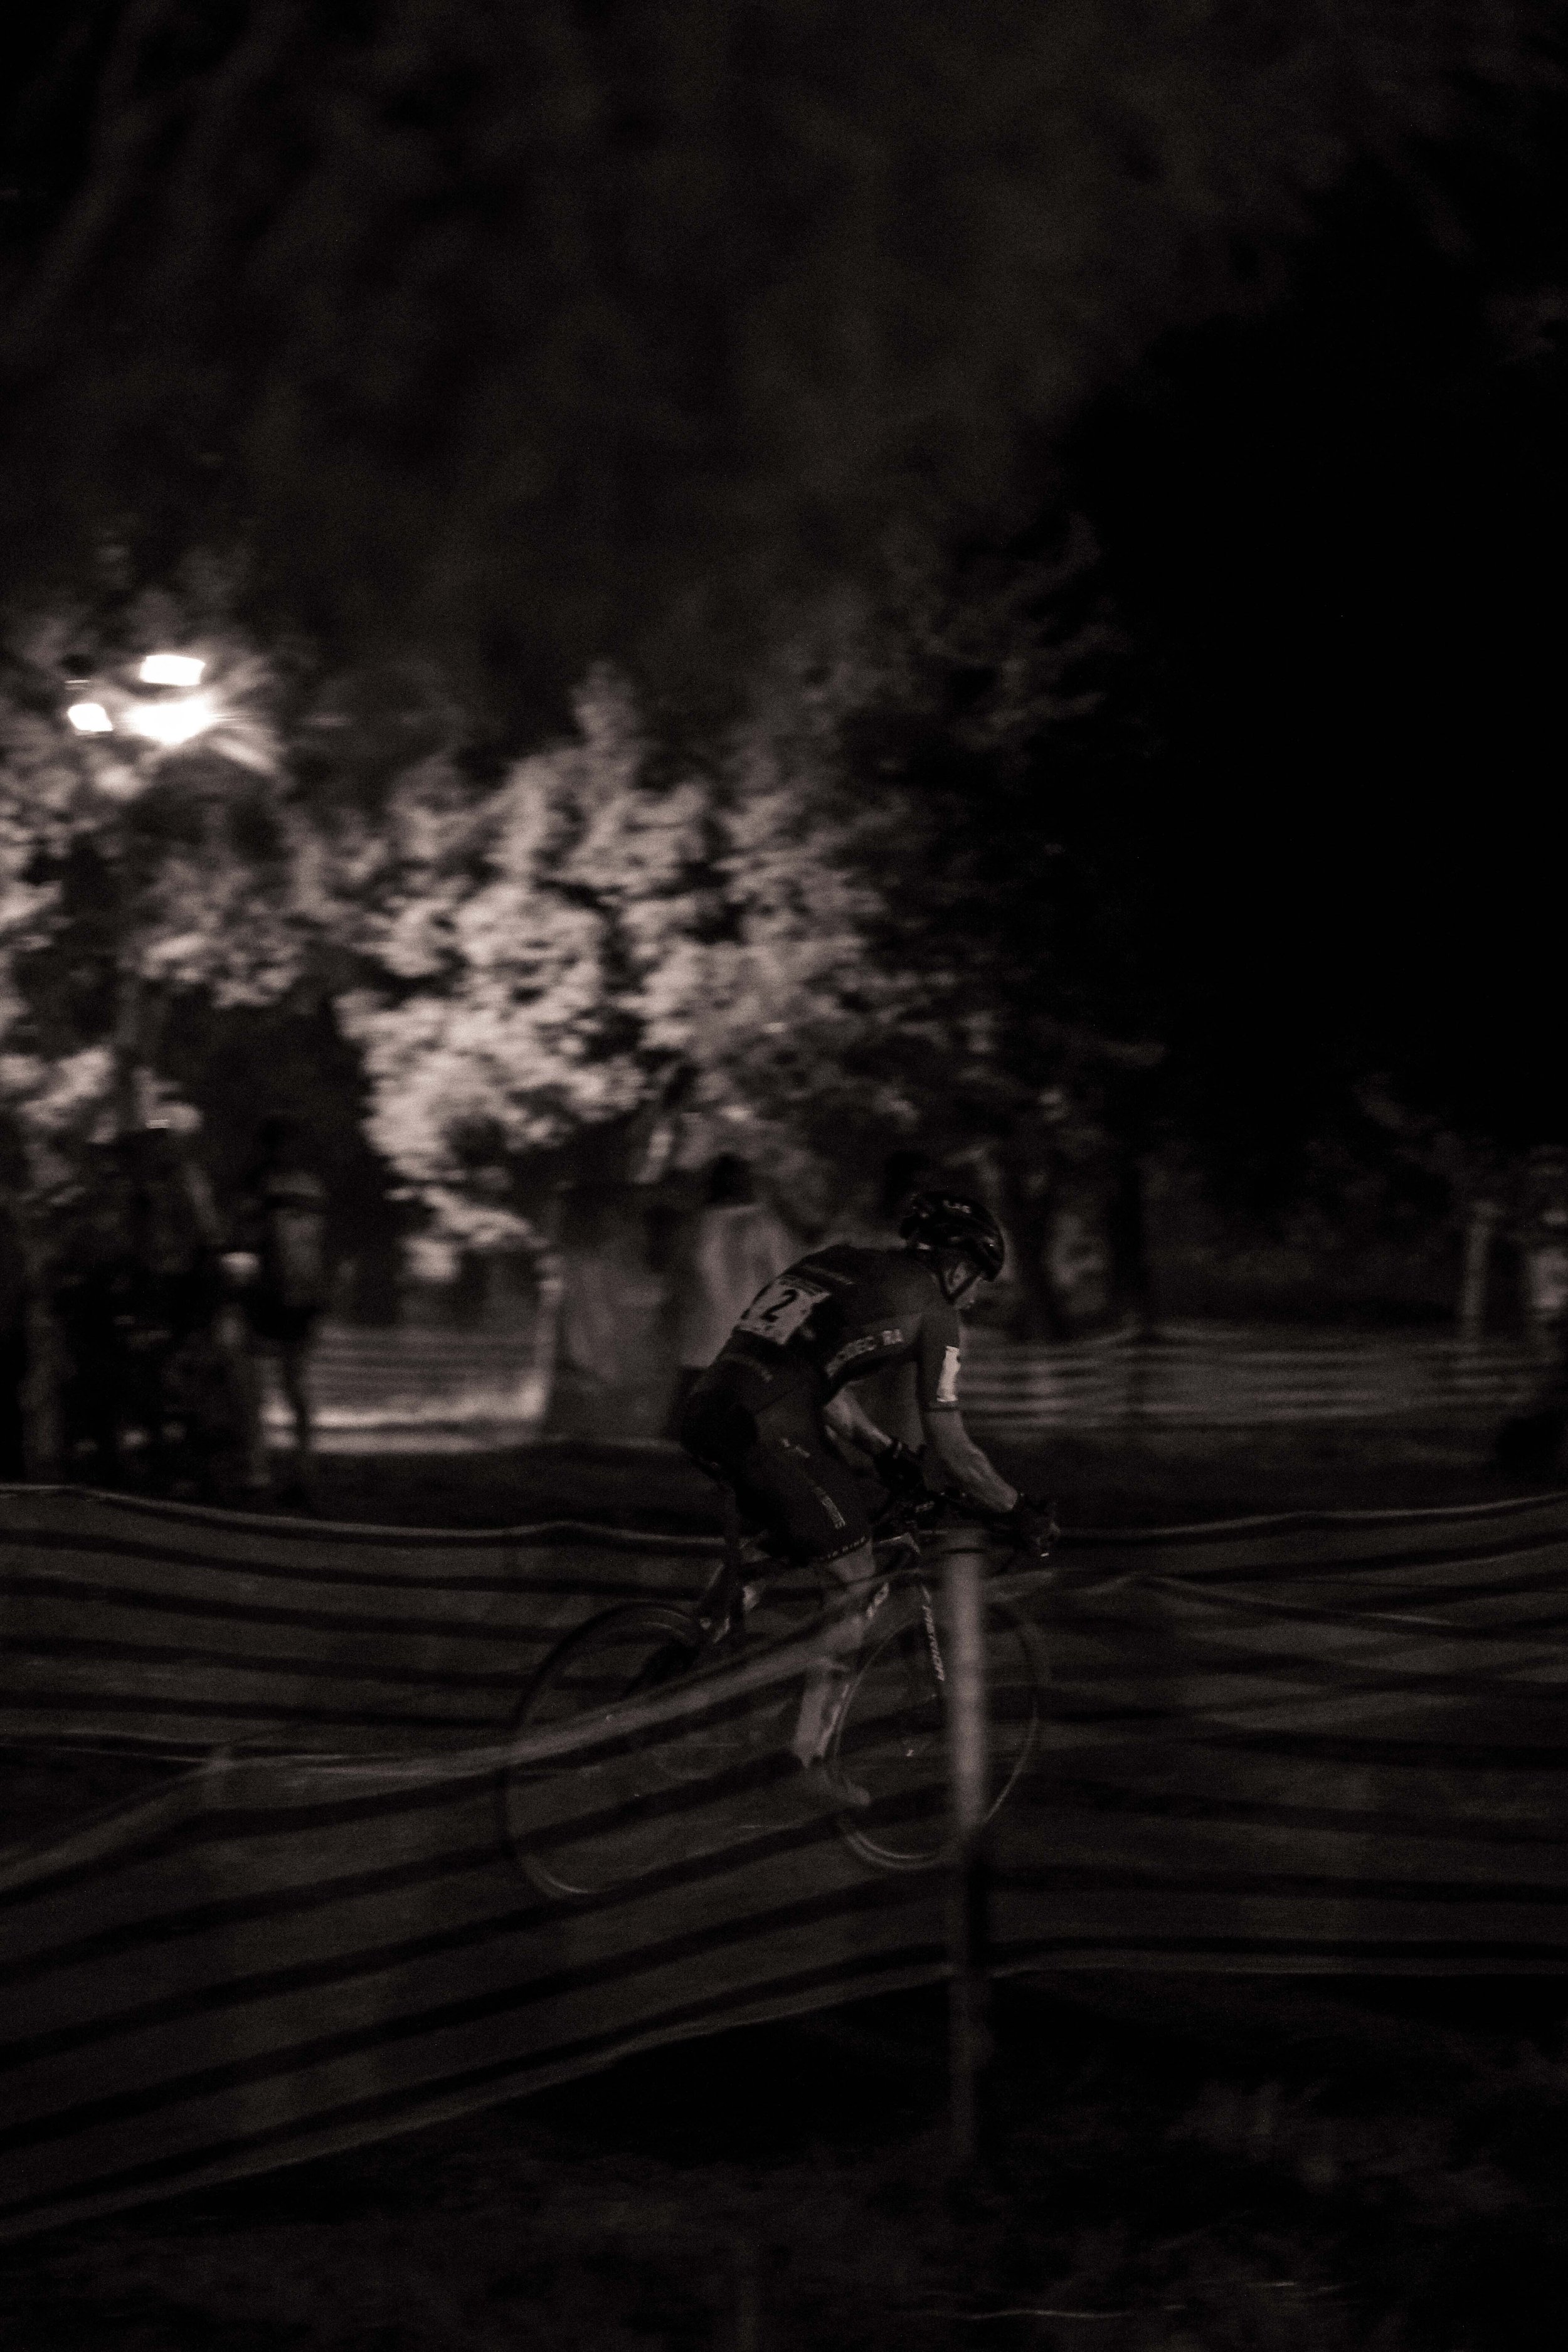 darkcross 21 turocycling-44.jpg